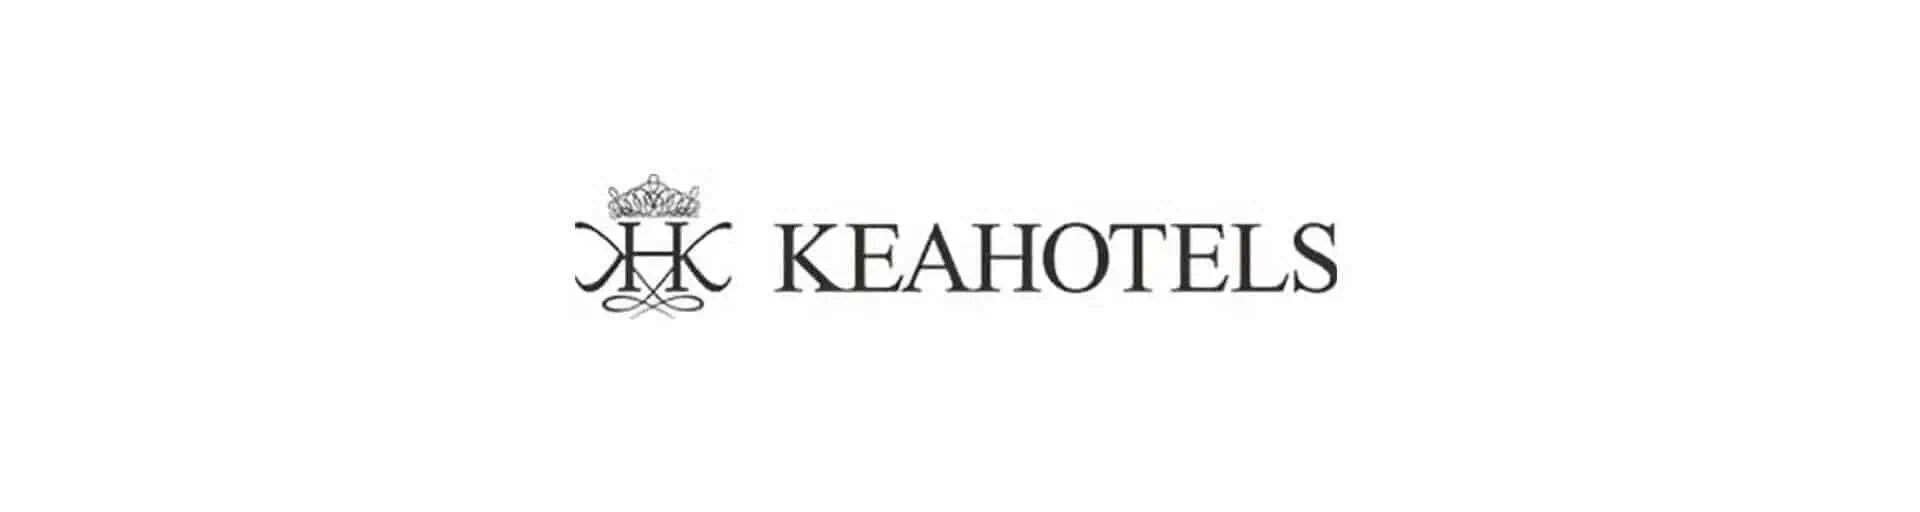 NBH 被指定为 KeaHotels 的品牌营销合作伙伴